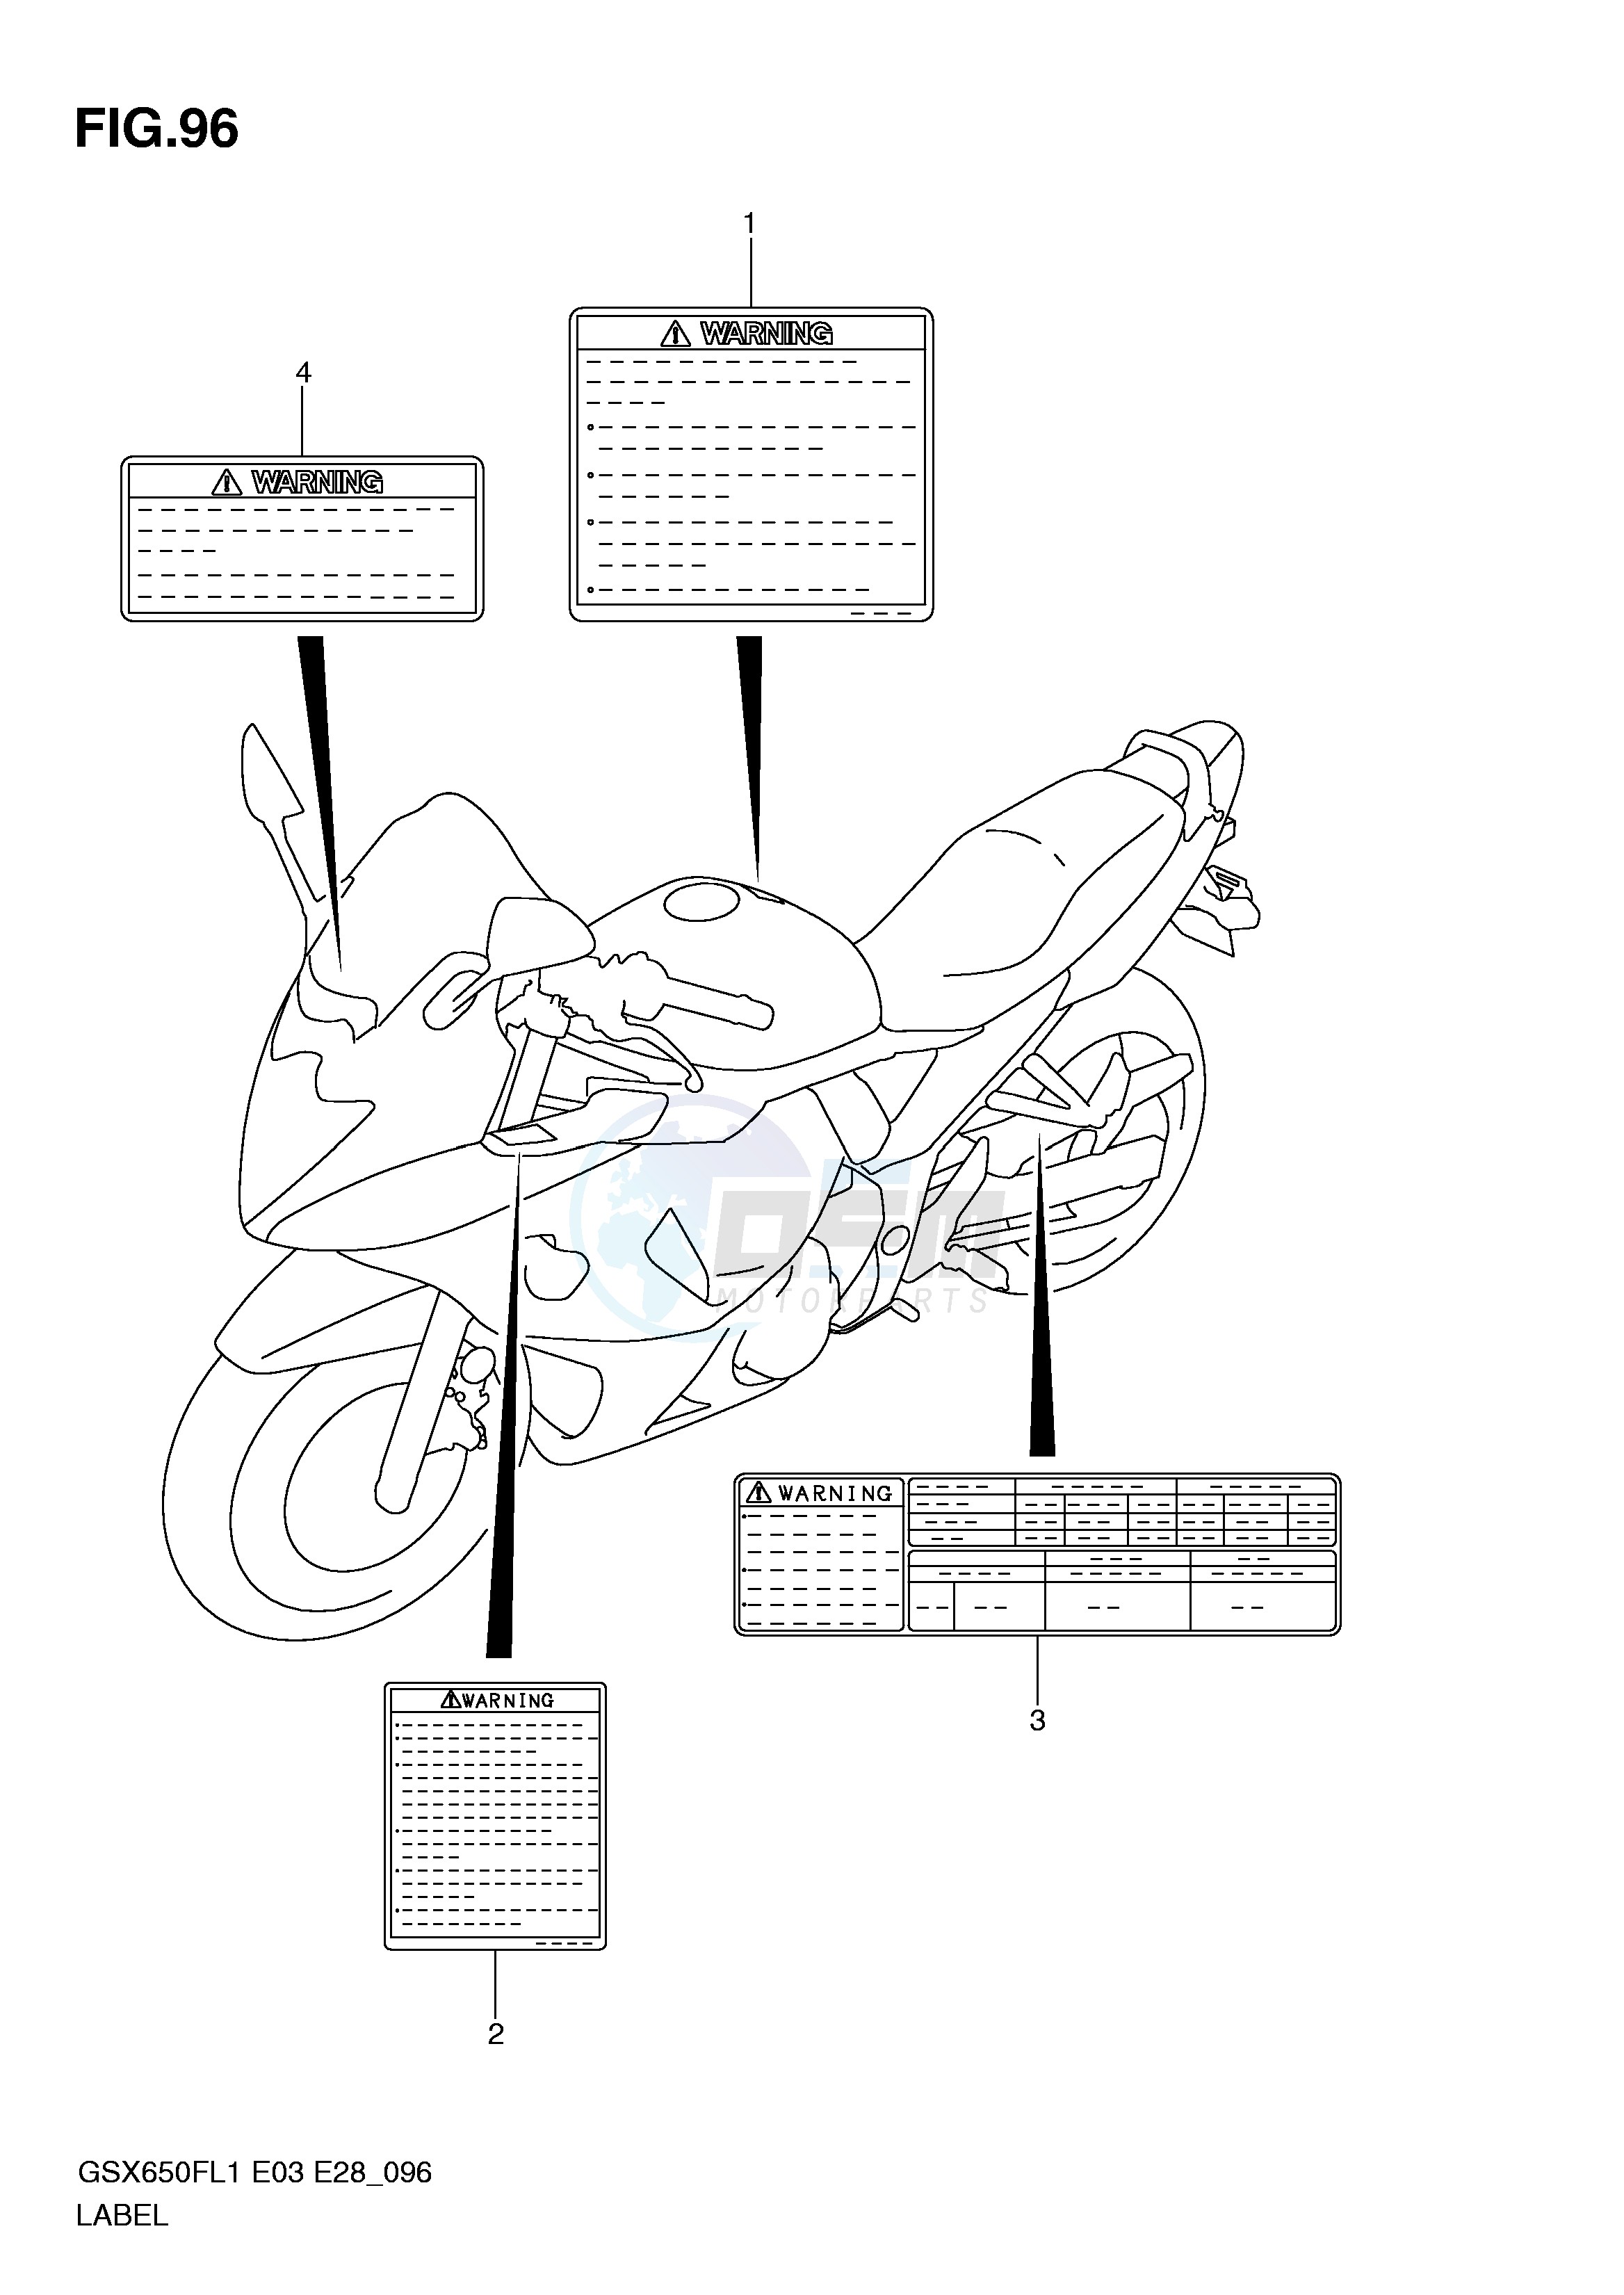 LABEL (GSX650FAL1 E28) blueprint